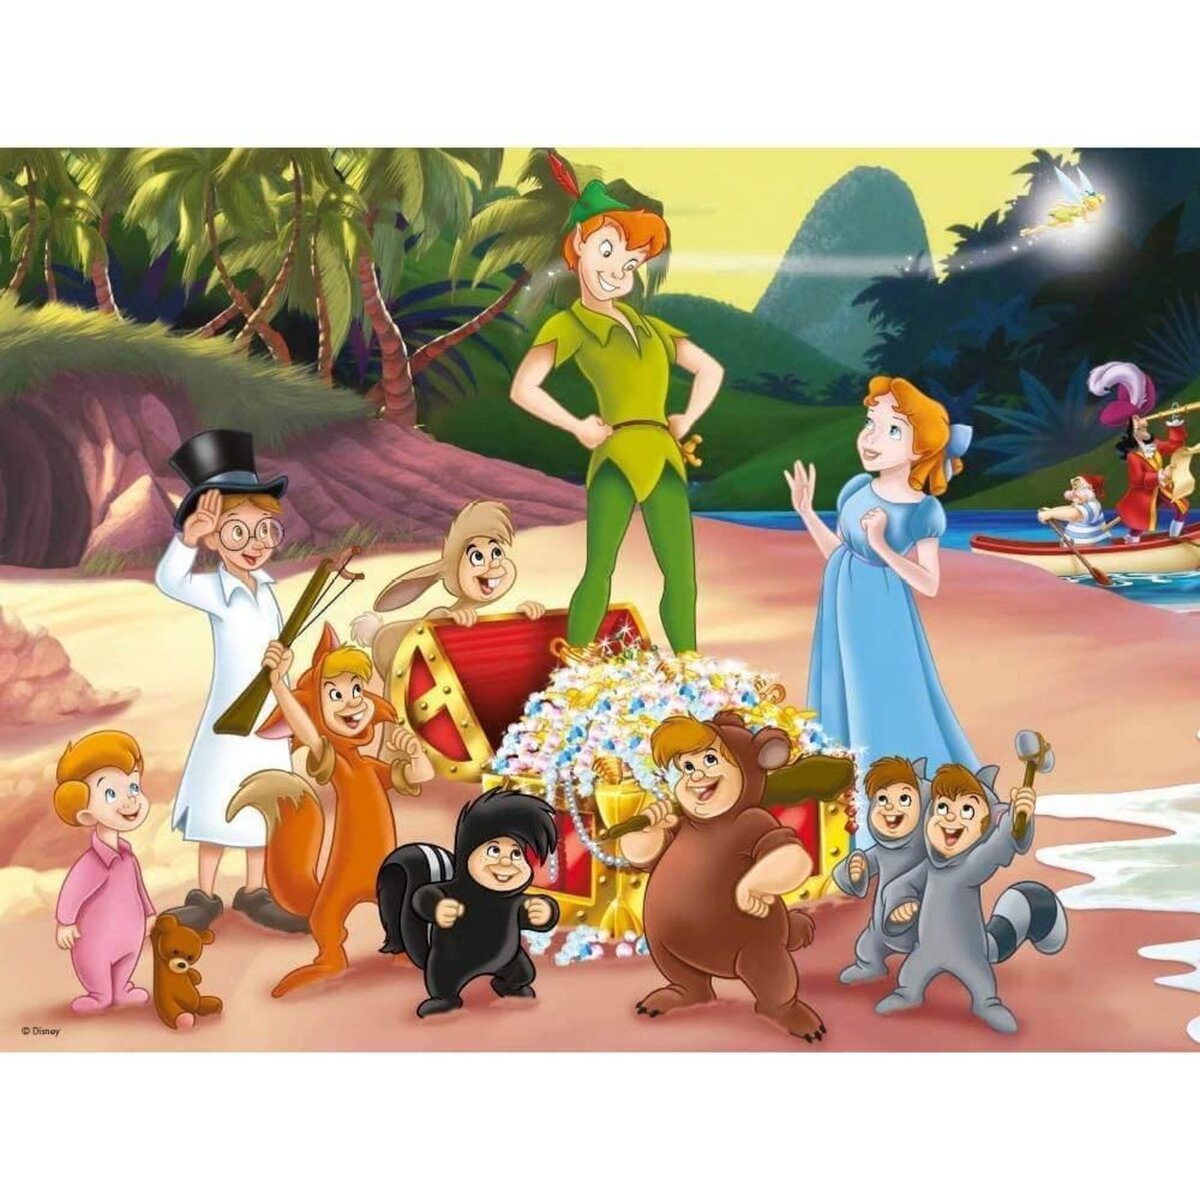 King Puzzles Puzzle 500 pièces : Disney : Peter Pan pas cher